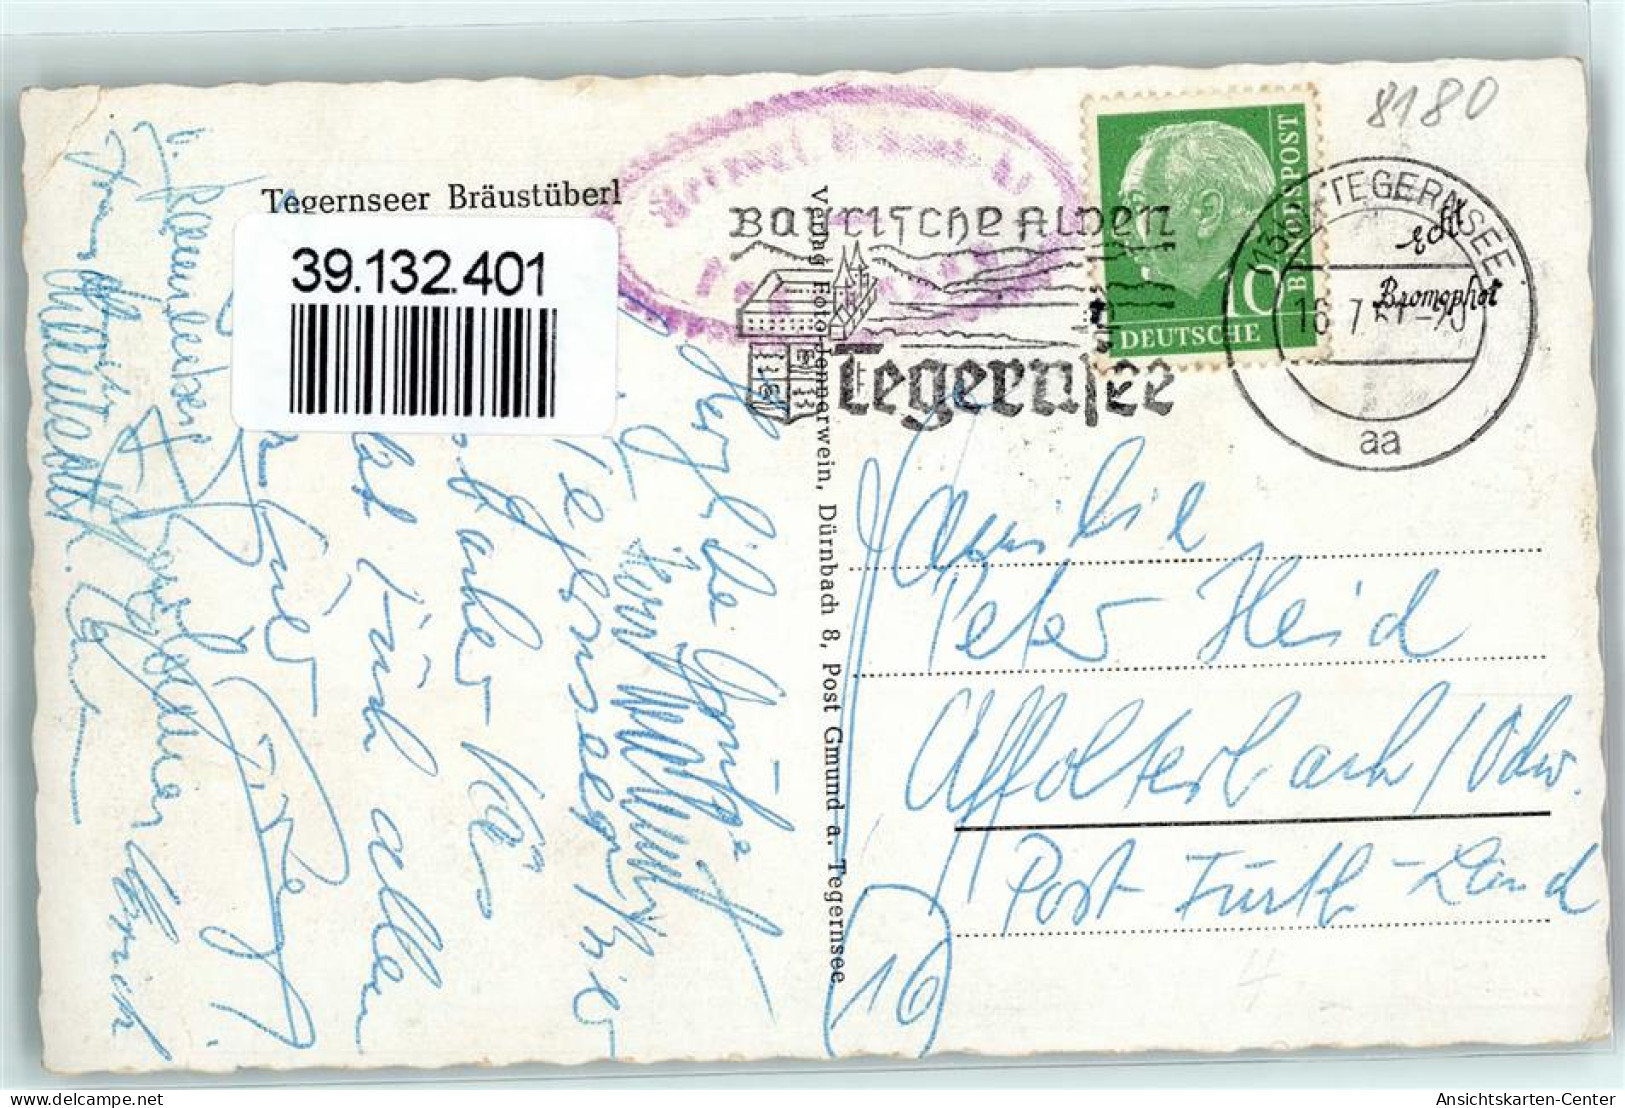 39132401 - Tegernsee - Tegernsee